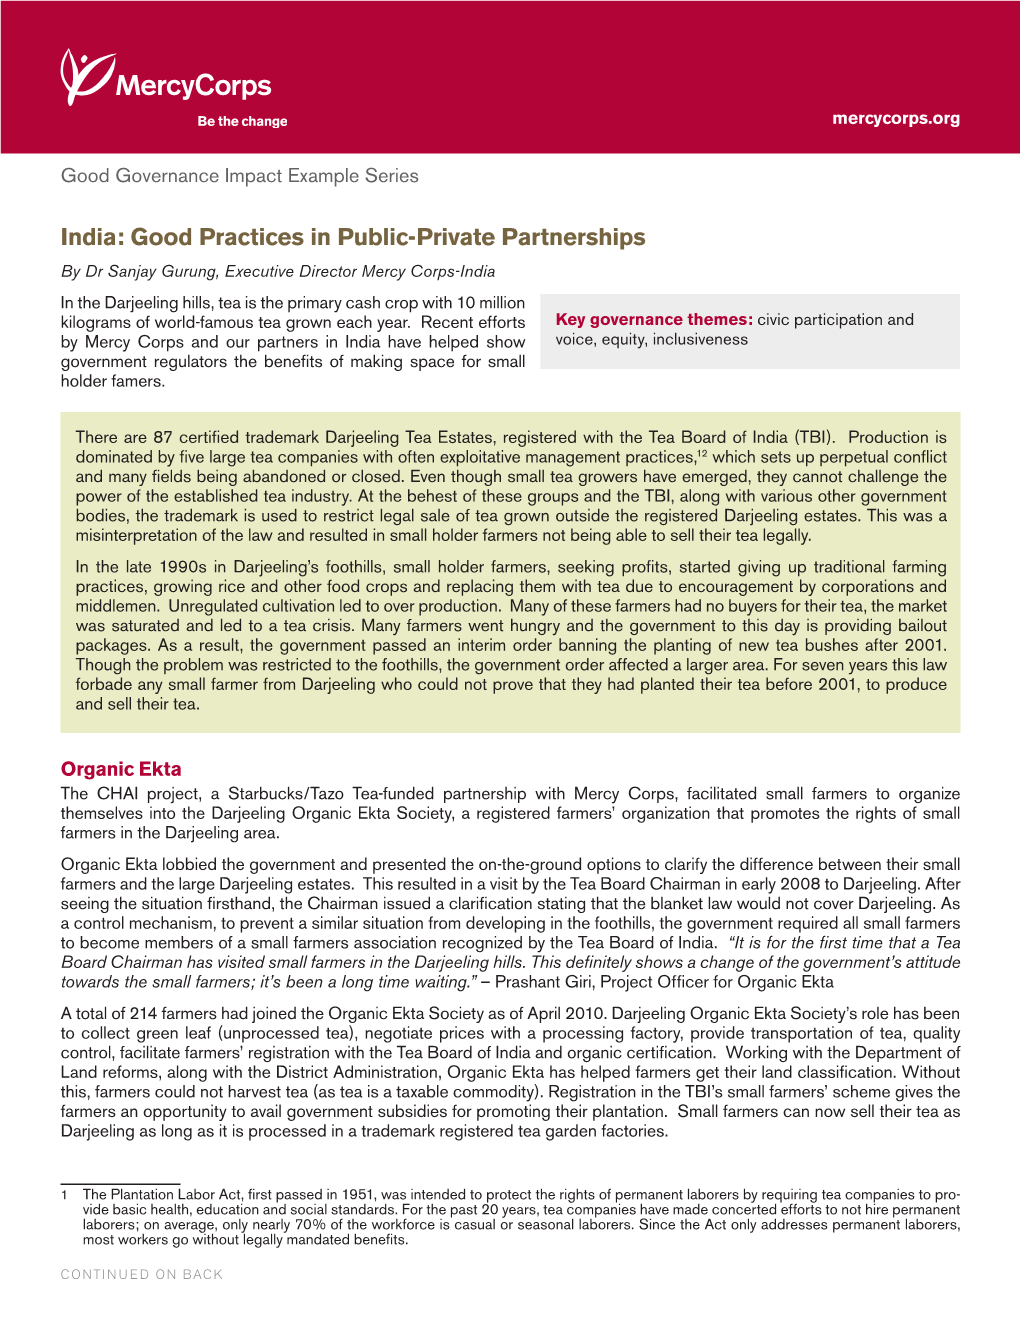 India: Good Practices in Public-Private